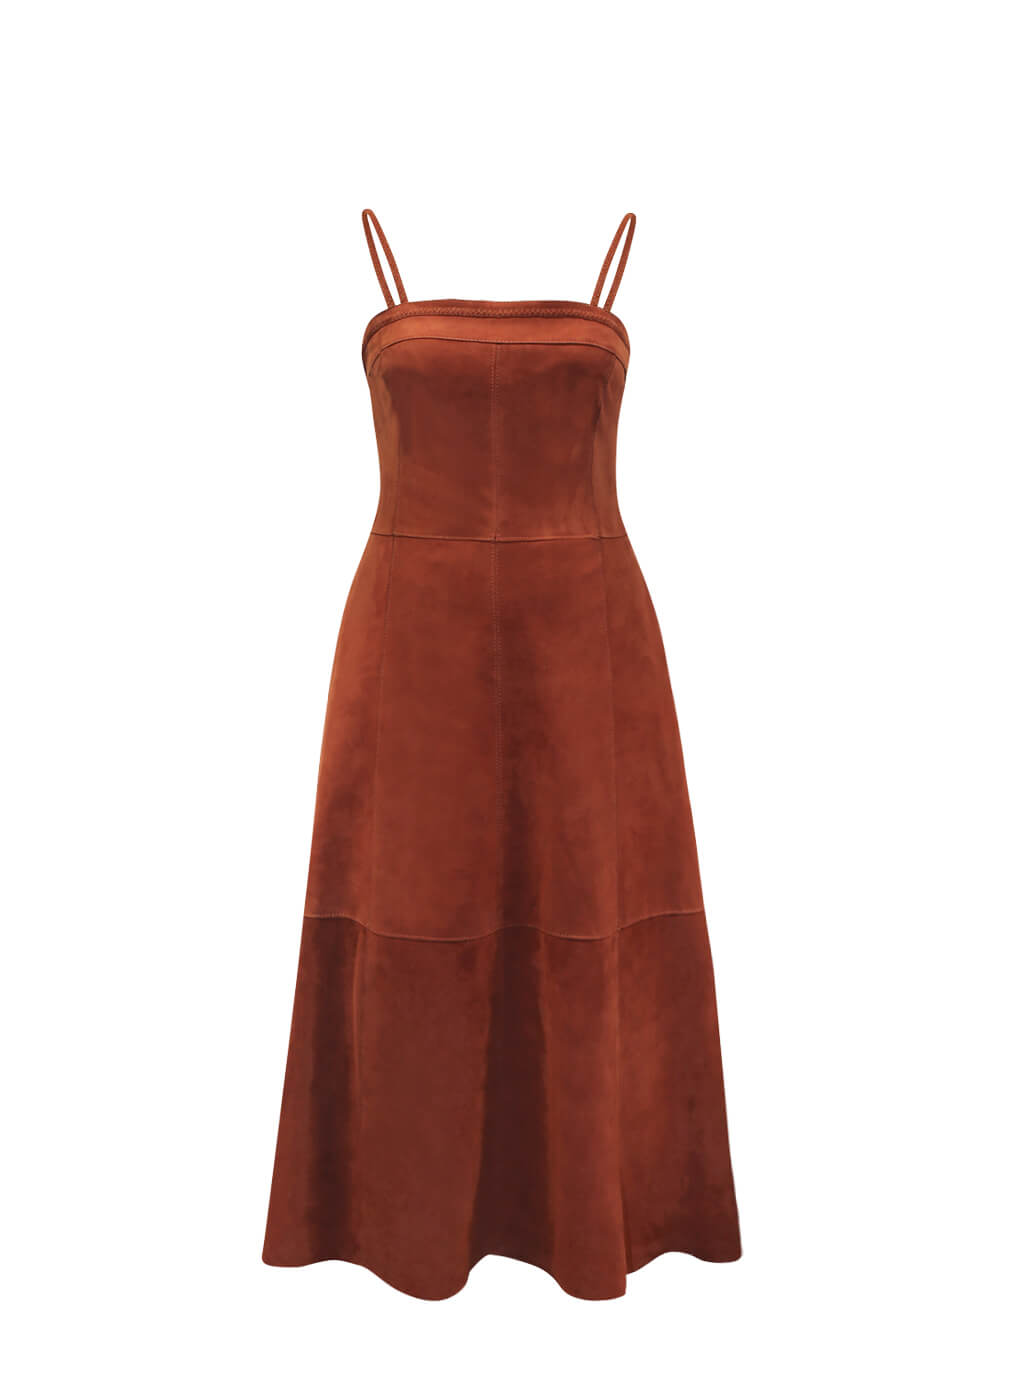 Ziegenleder Kleid “Malibu Strap”, rusted red